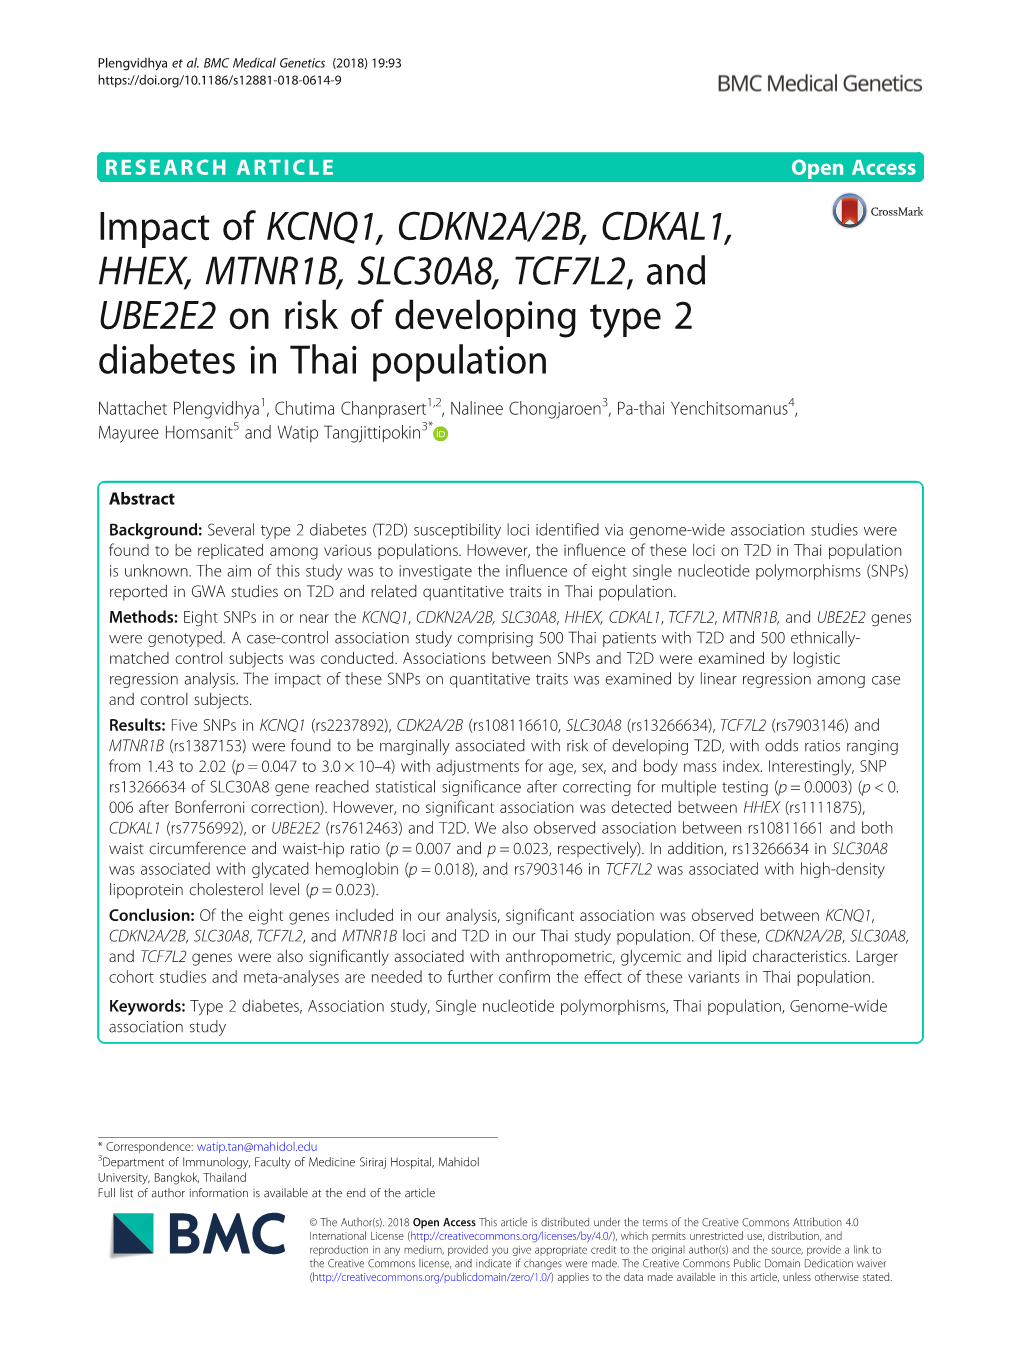 Impact of KCNQ1, CDKN2A/2B, CDKAL1, HHEX, MTNR1B